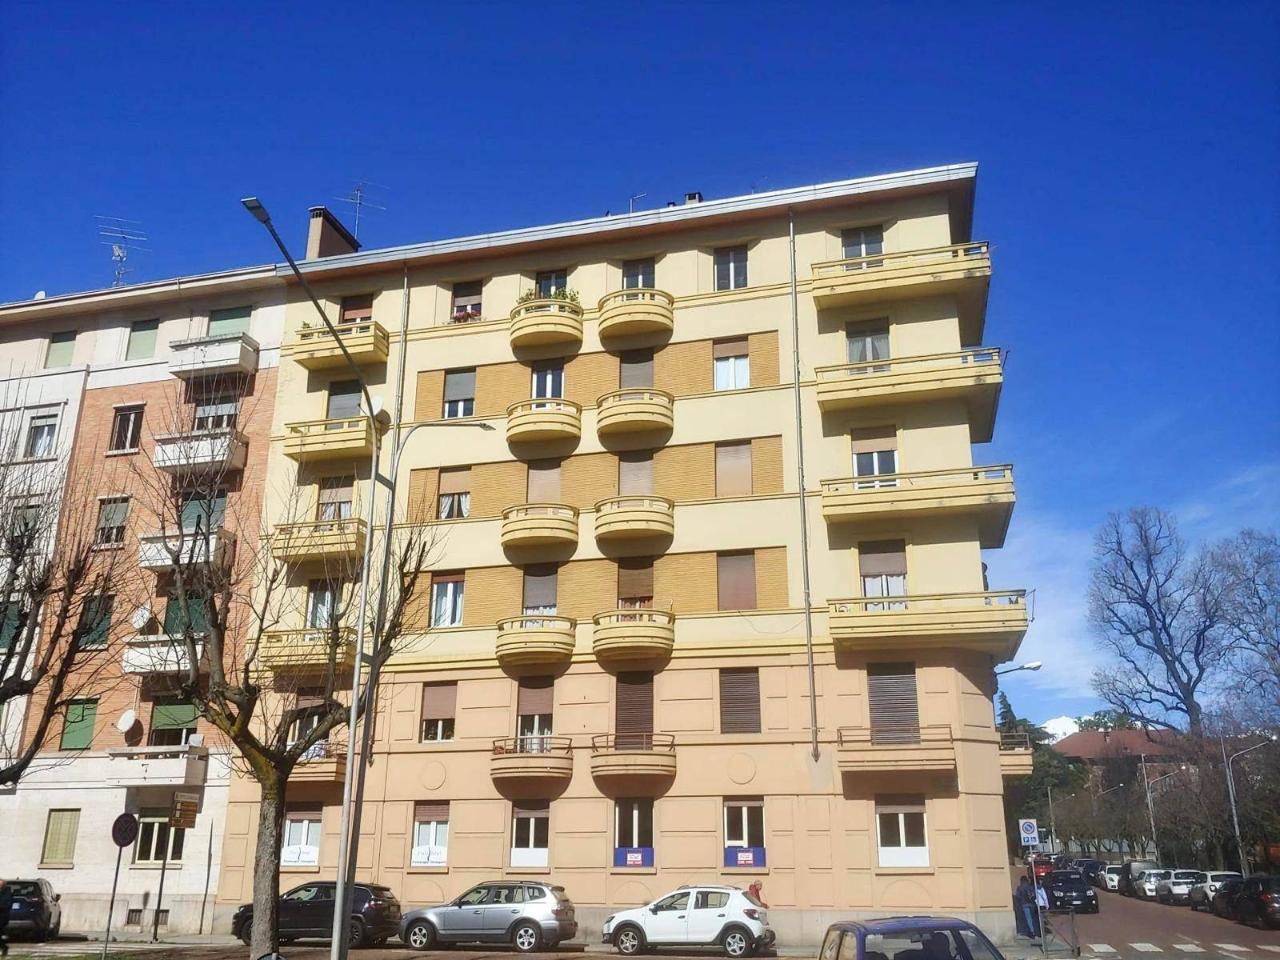 Ufficio condiviso in vendita a Biella